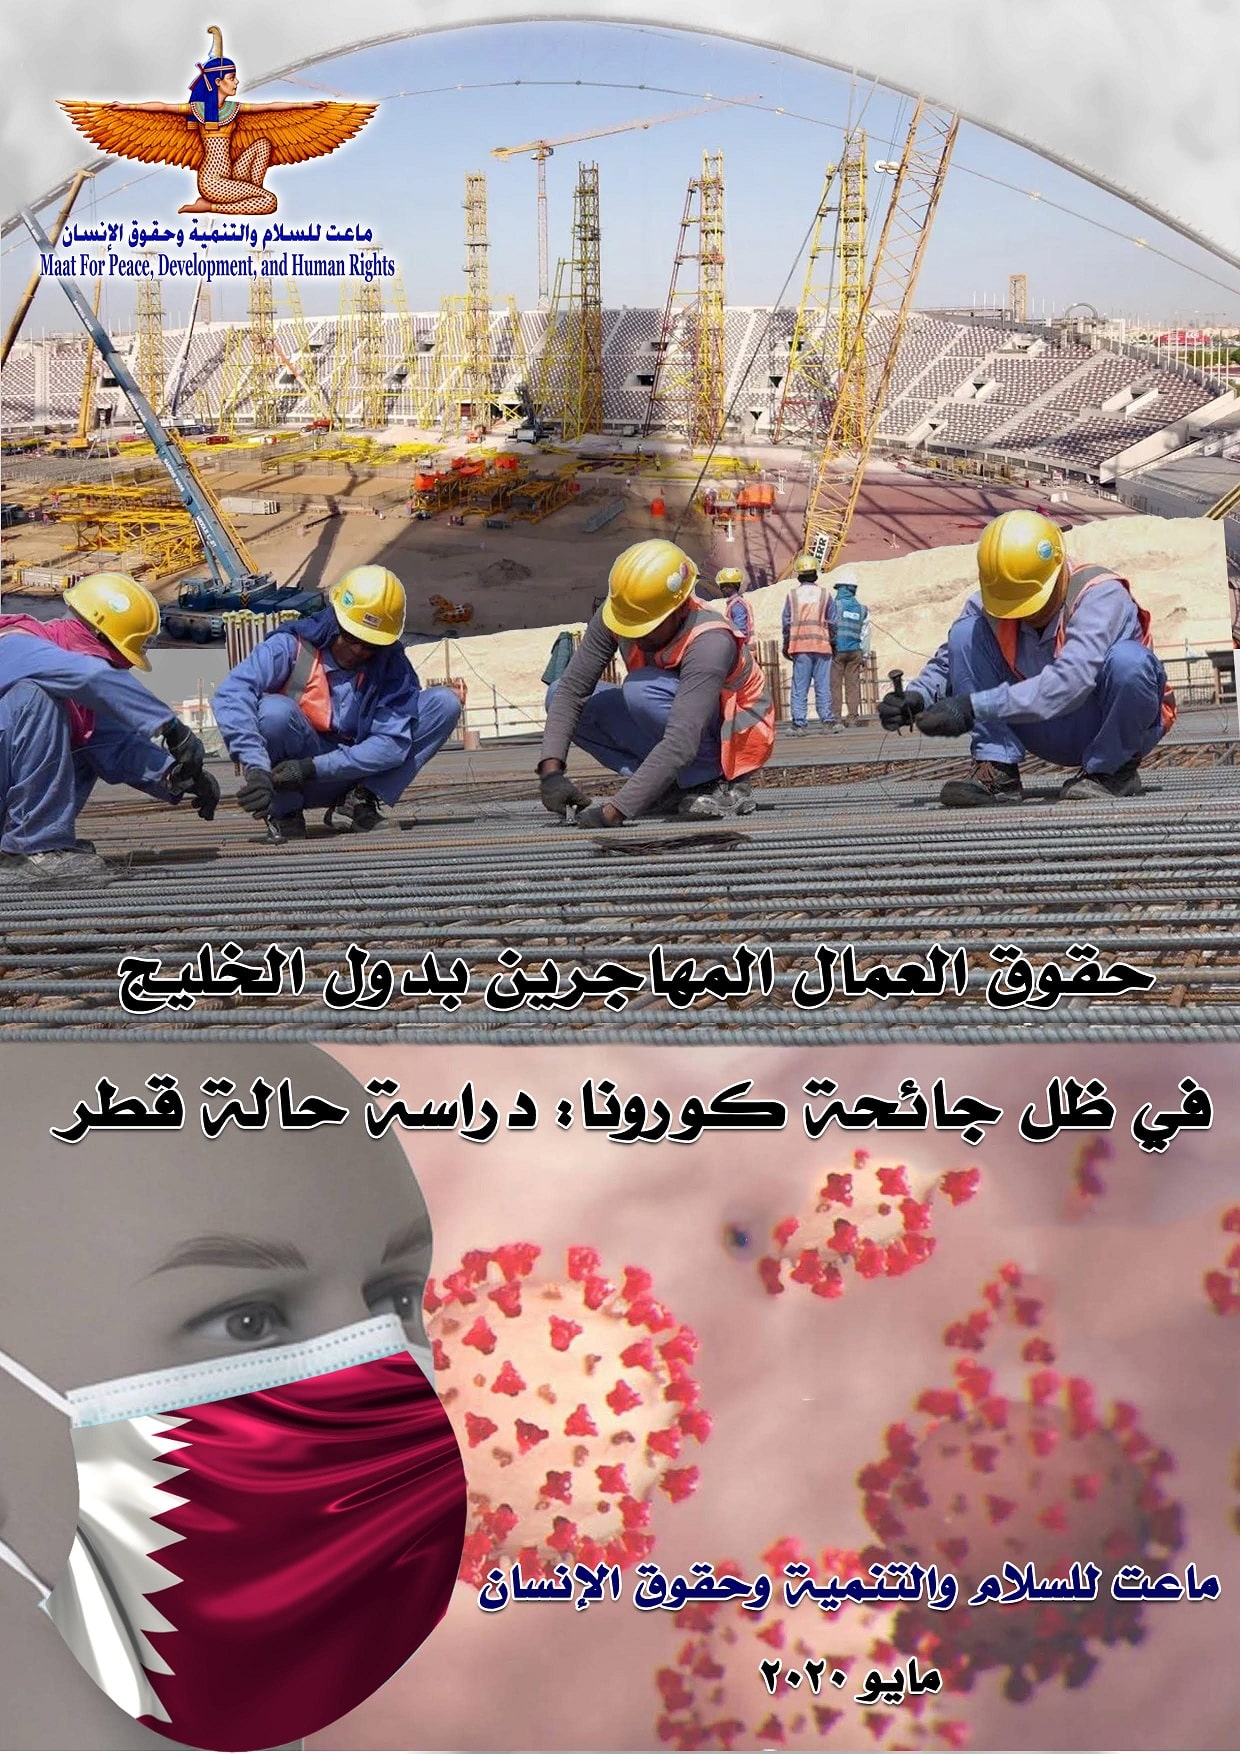 نظام الدوحة يستغل كورونا لارتكاب الانتهاكات بحق العمالة